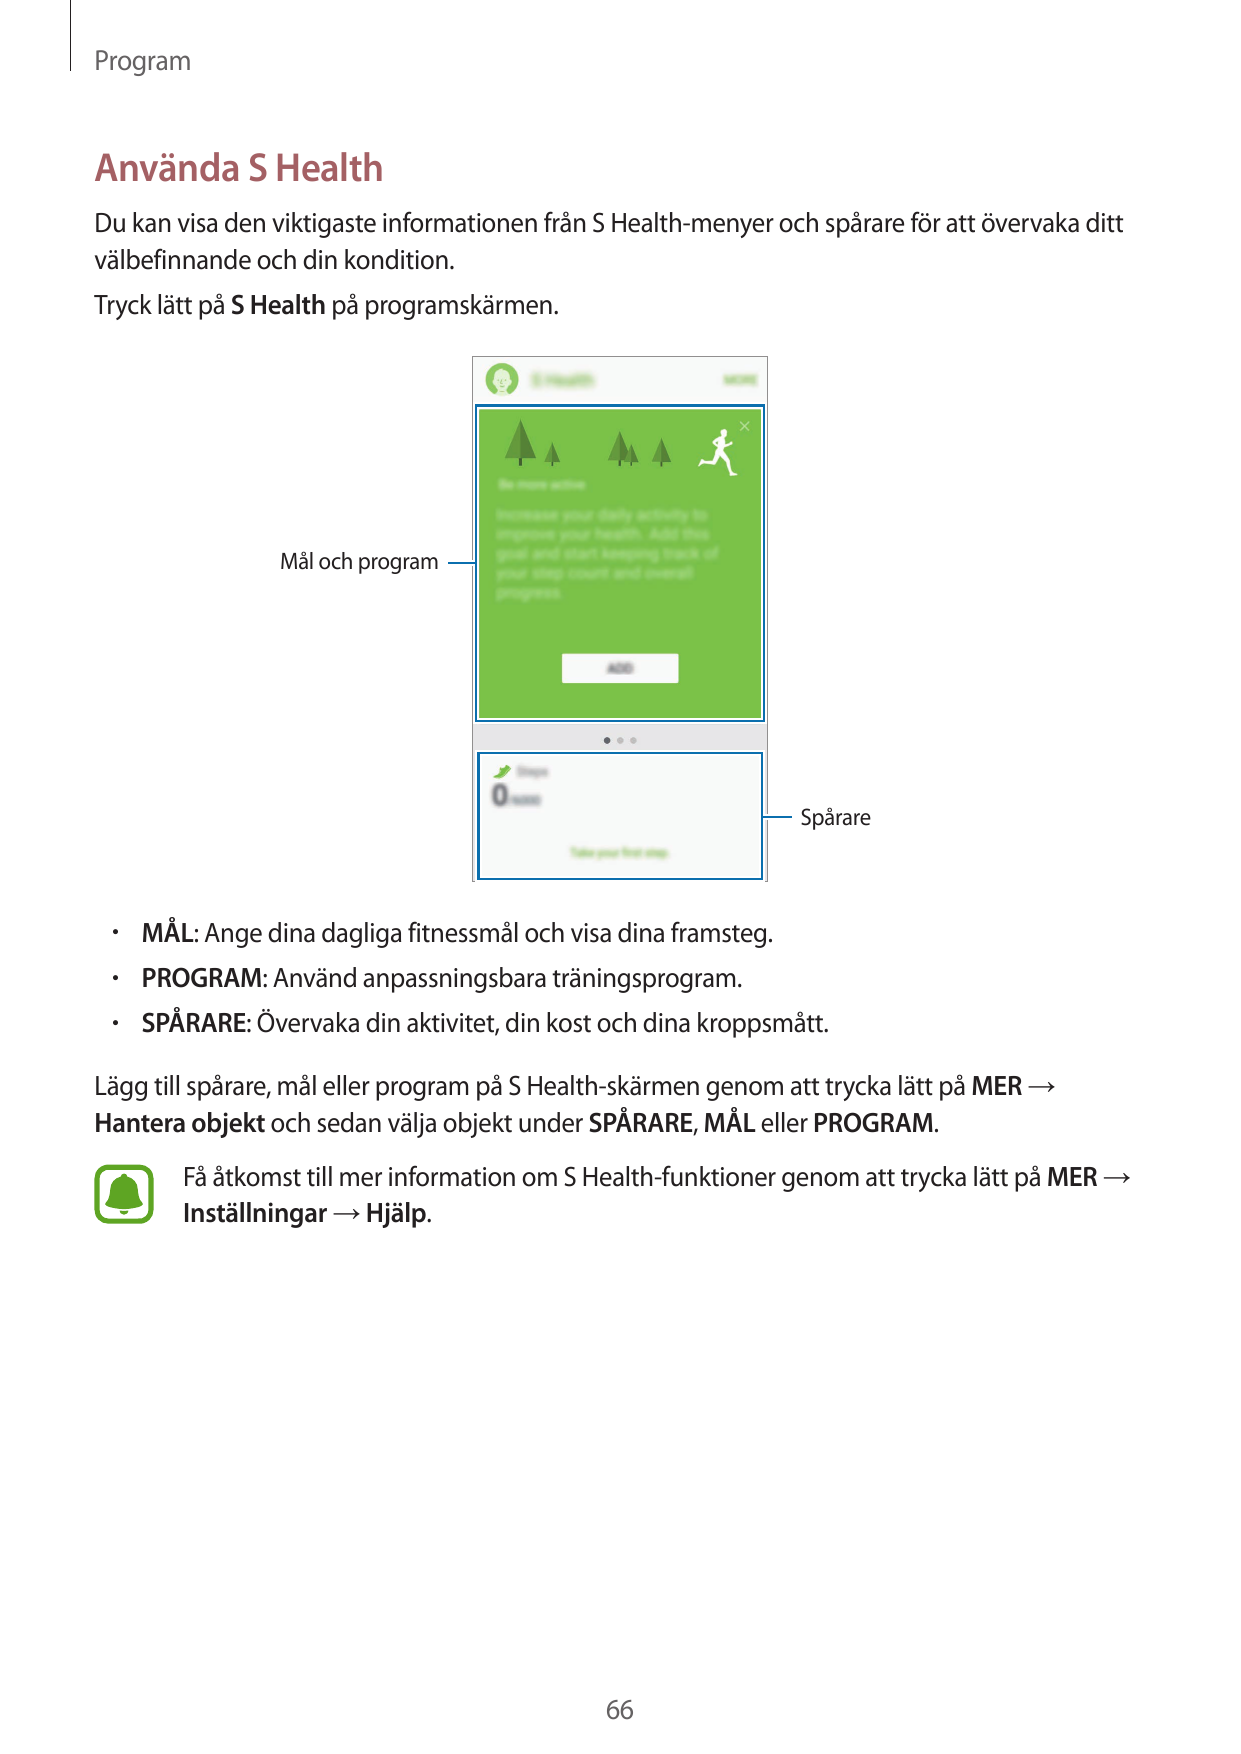 ProgramAnvända S HealthDu kan visa den viktigaste informationen från S Health-menyer och spårare för att övervaka dittvälbefinna